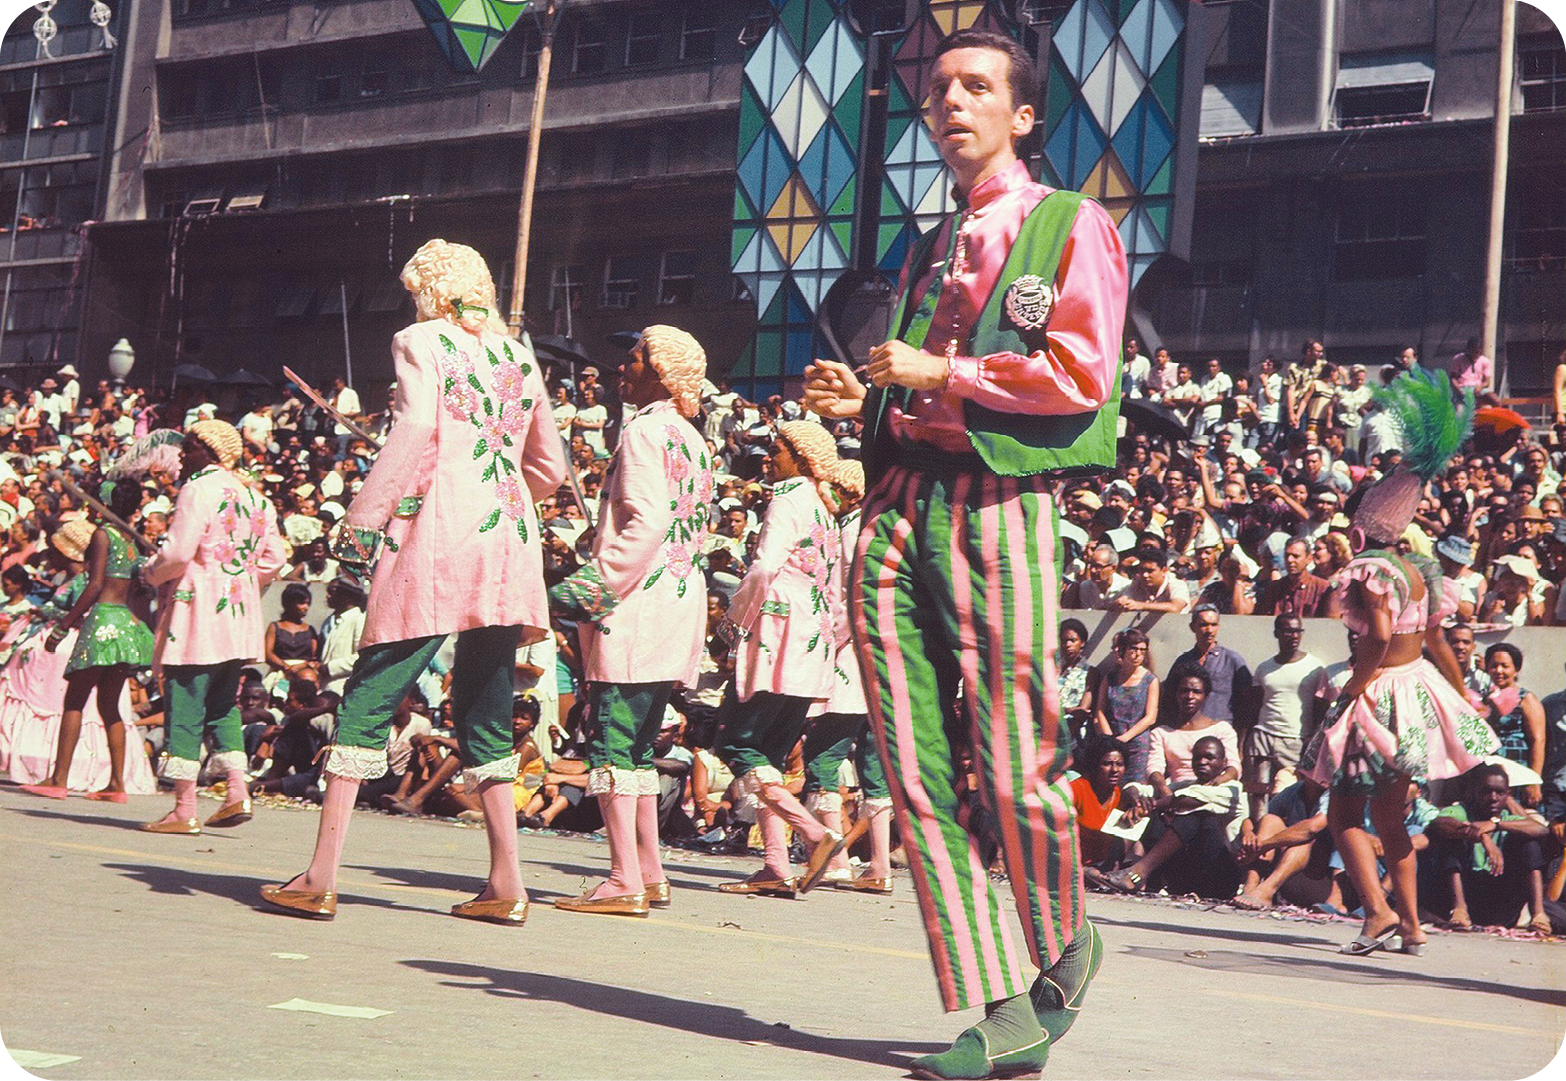 Fotografia. Em primeiro plano, destaque de um homem vestindo figurino verde e rosa que dança em uma via. Em segundo plano, outras pessoas com figurino diferente, mas da mesma cor, desfilam. Ao fundo, uma multidão as assiste.